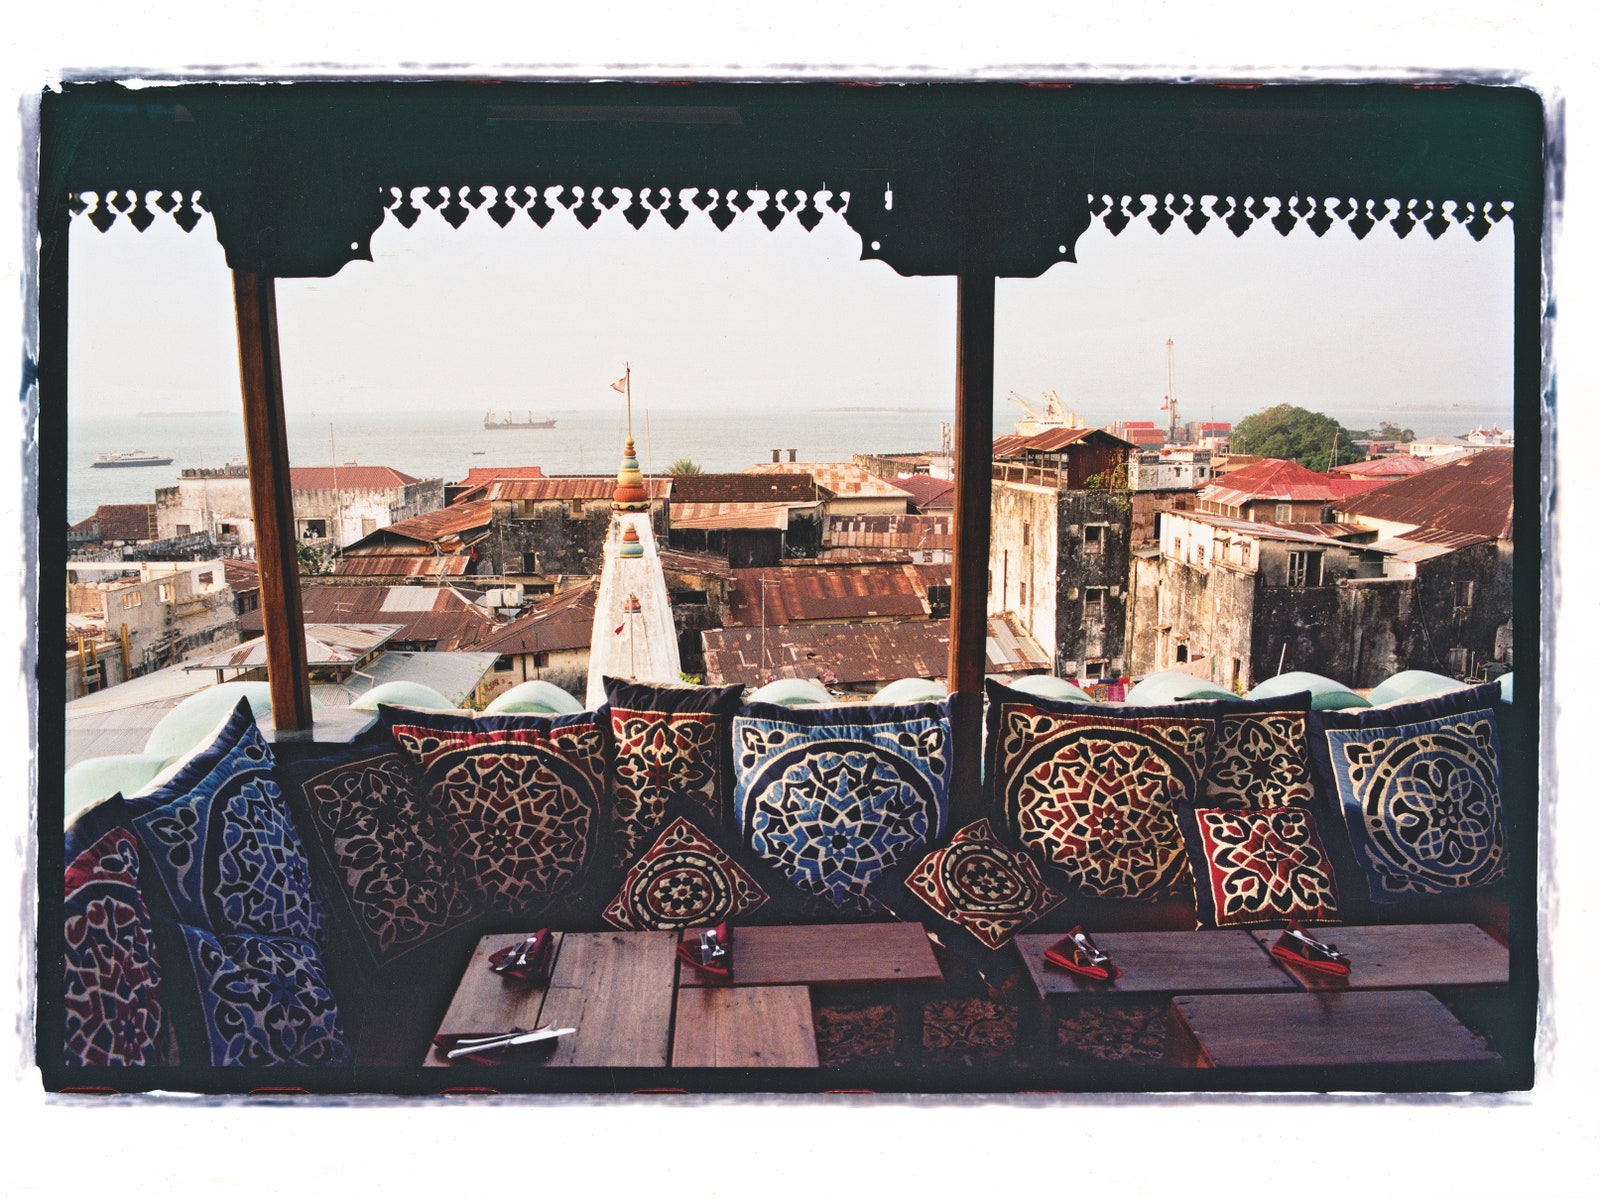 Панорамная терраса в отеле Emerson СтоунТаун. Вечный оазис в городе который предлагает лучший вид на Индийский океан.